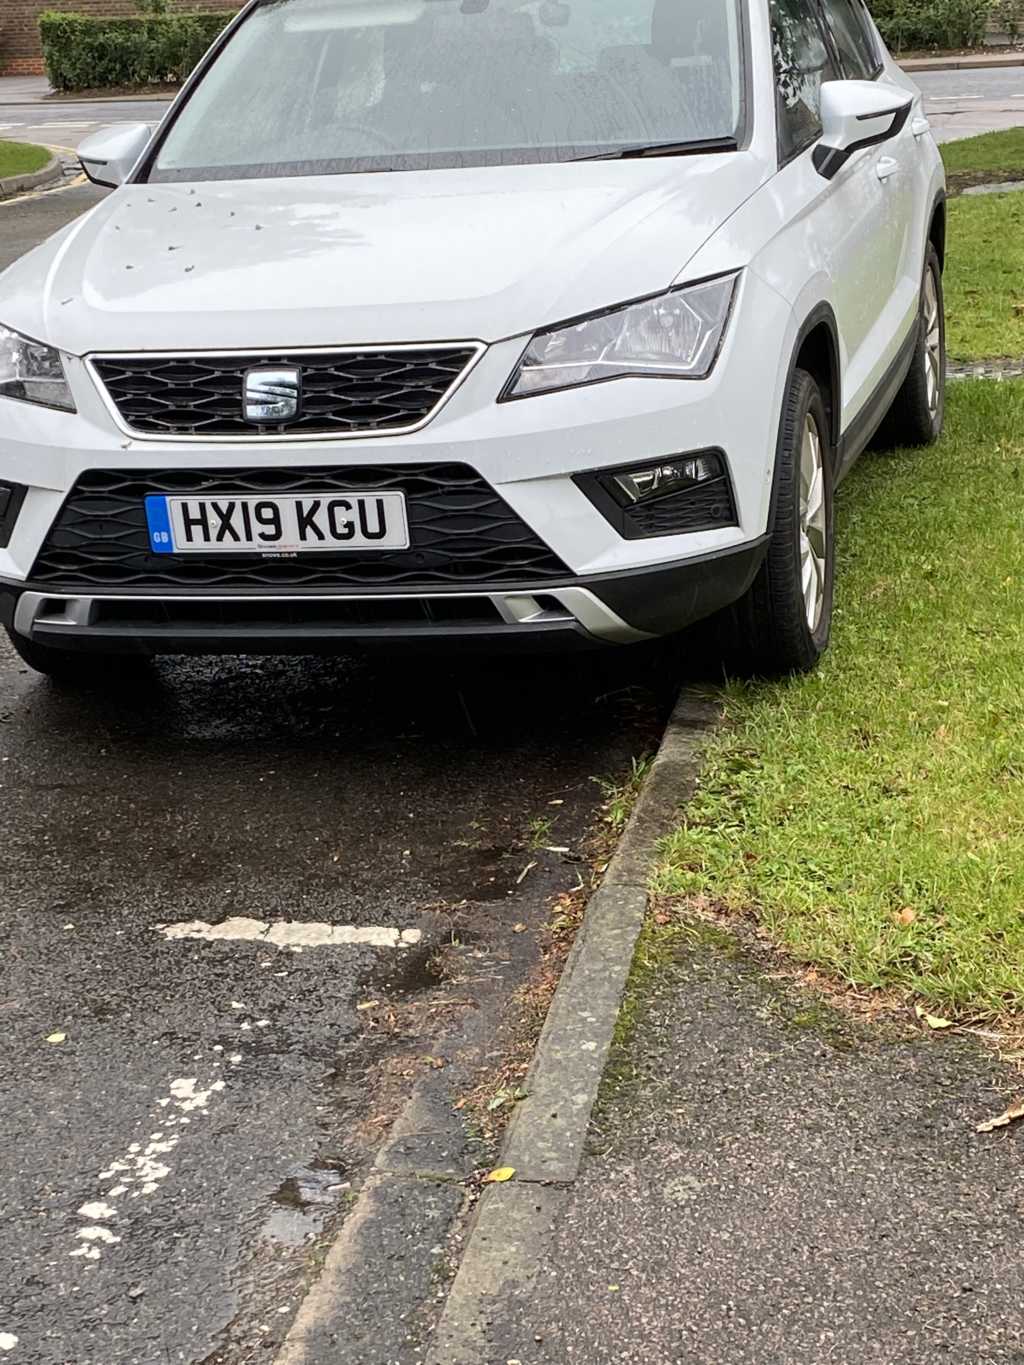 HX19 KGU displaying Inconsiderate Parking